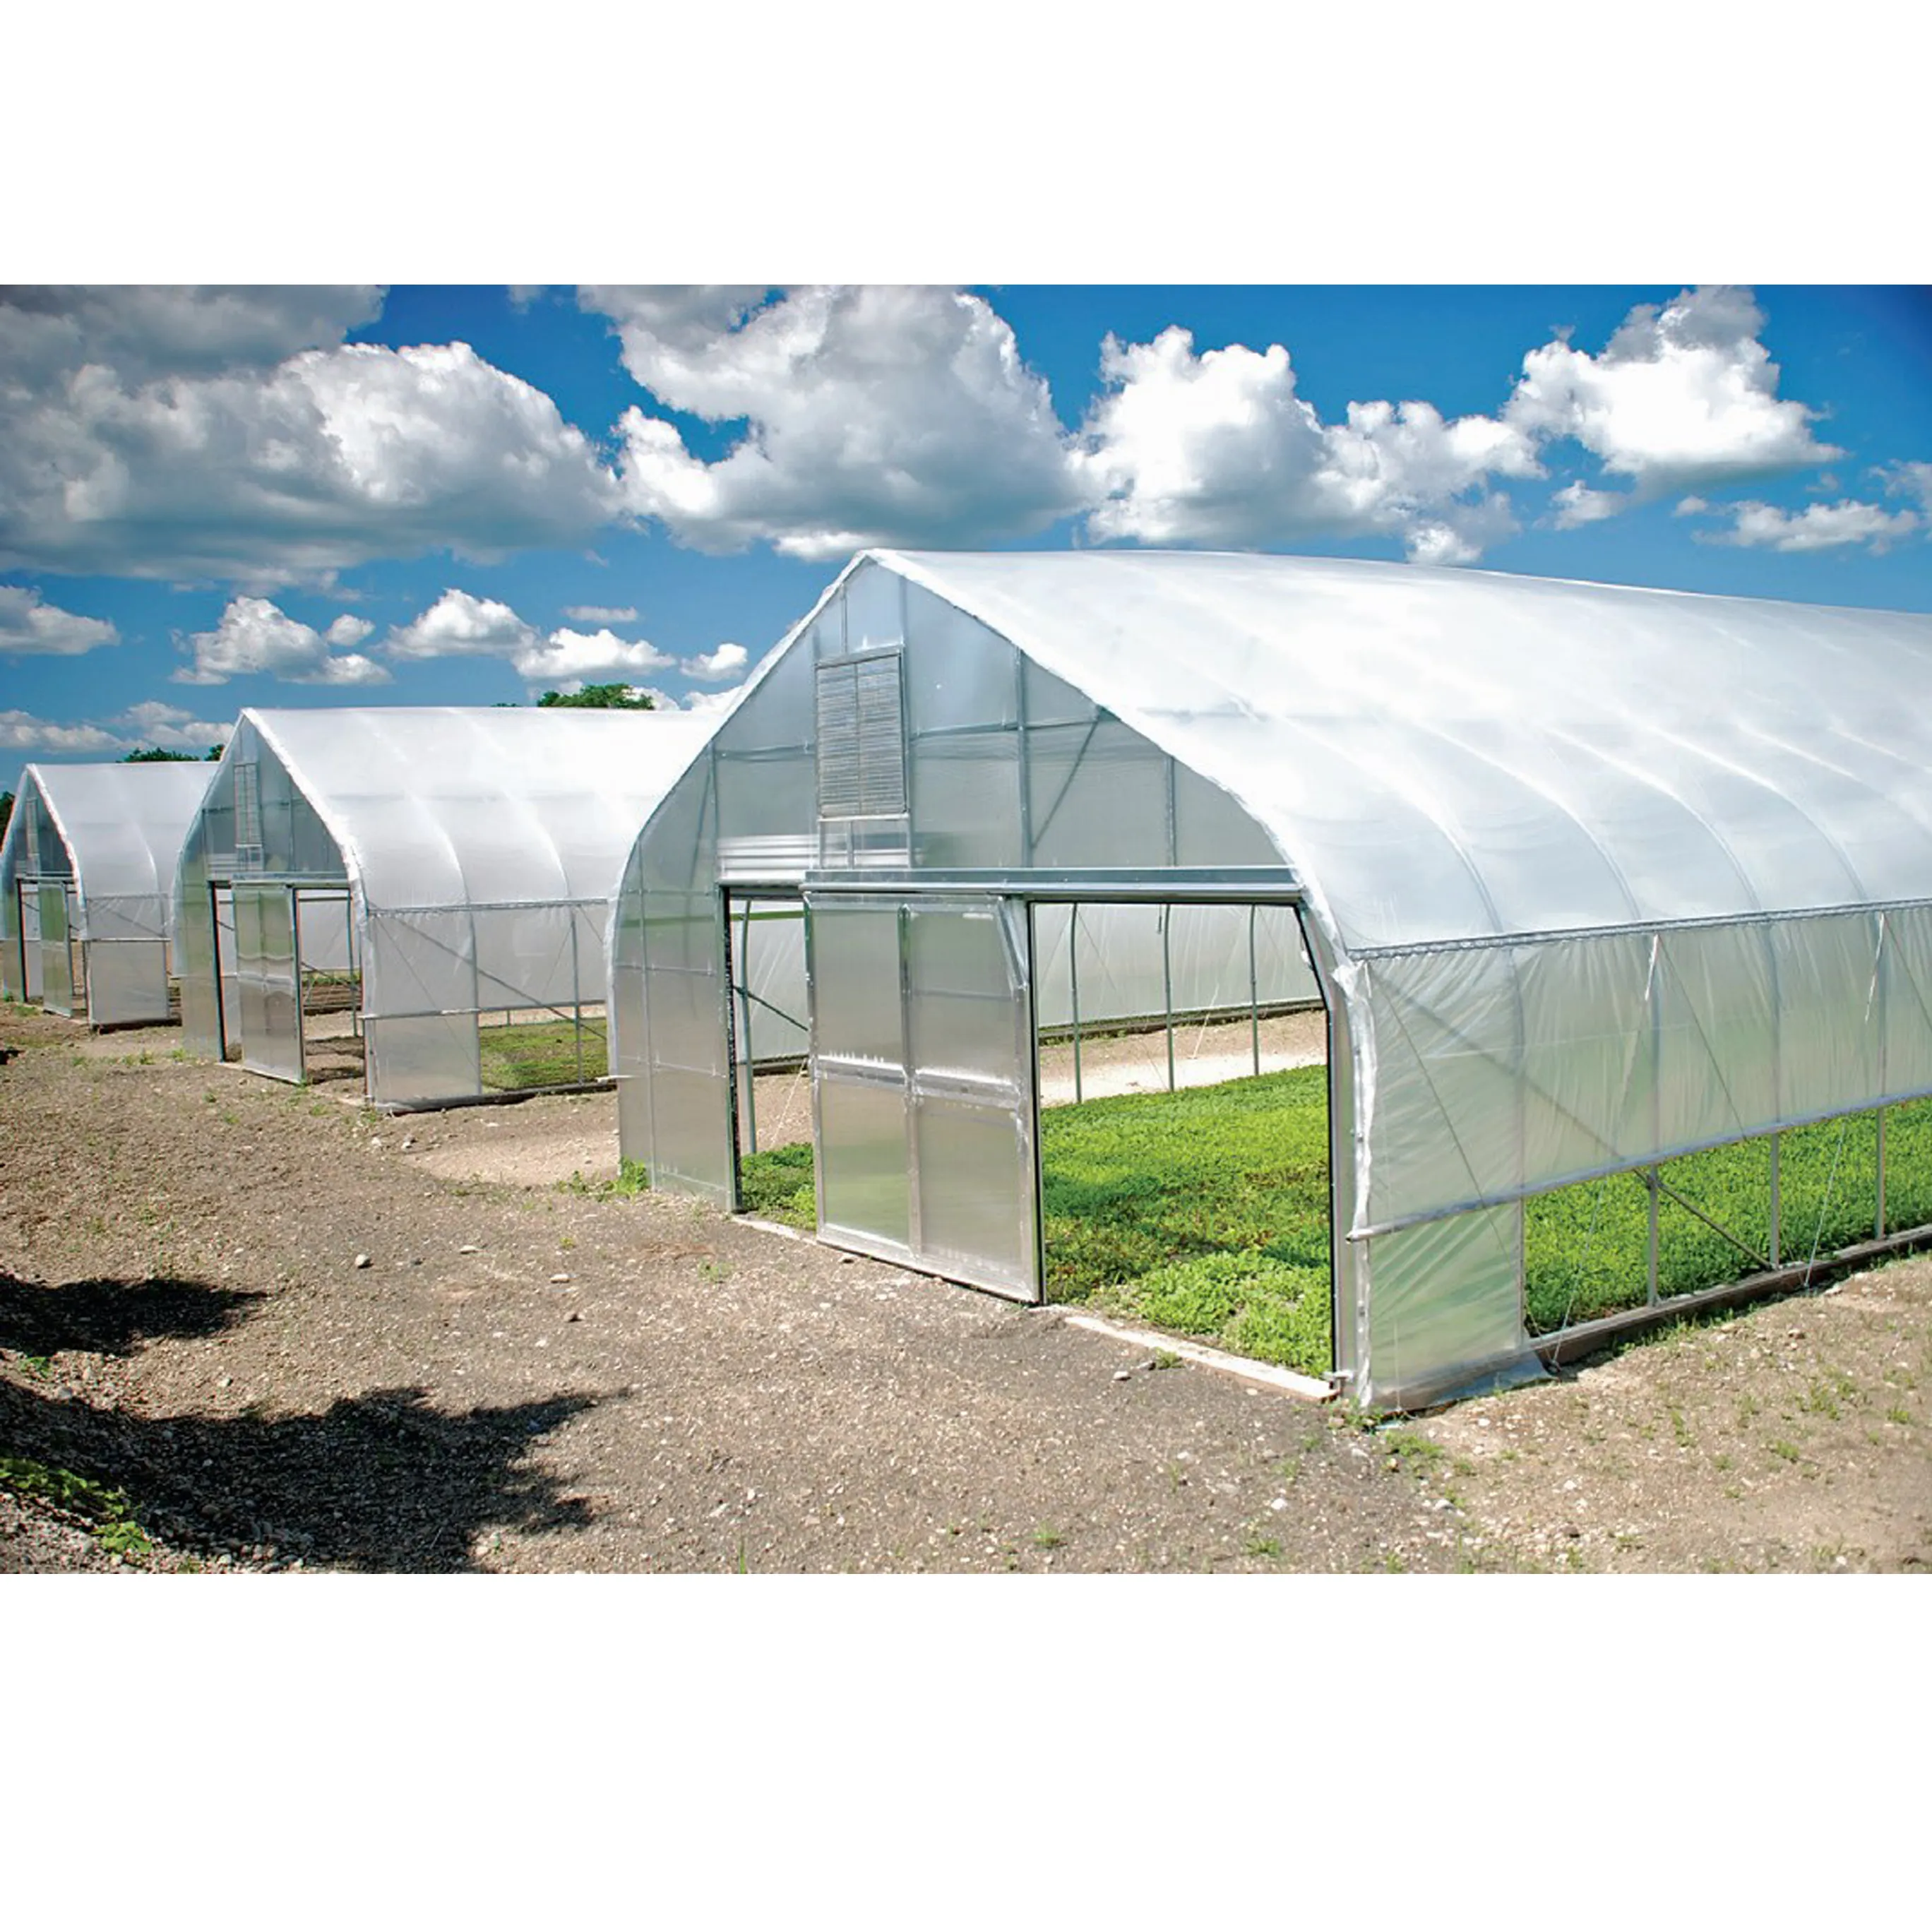 Estufas agrícolas baratas para cultivo de vegetais, filme plástico, com sistema hidropônico, estufa de Polity Tunnel